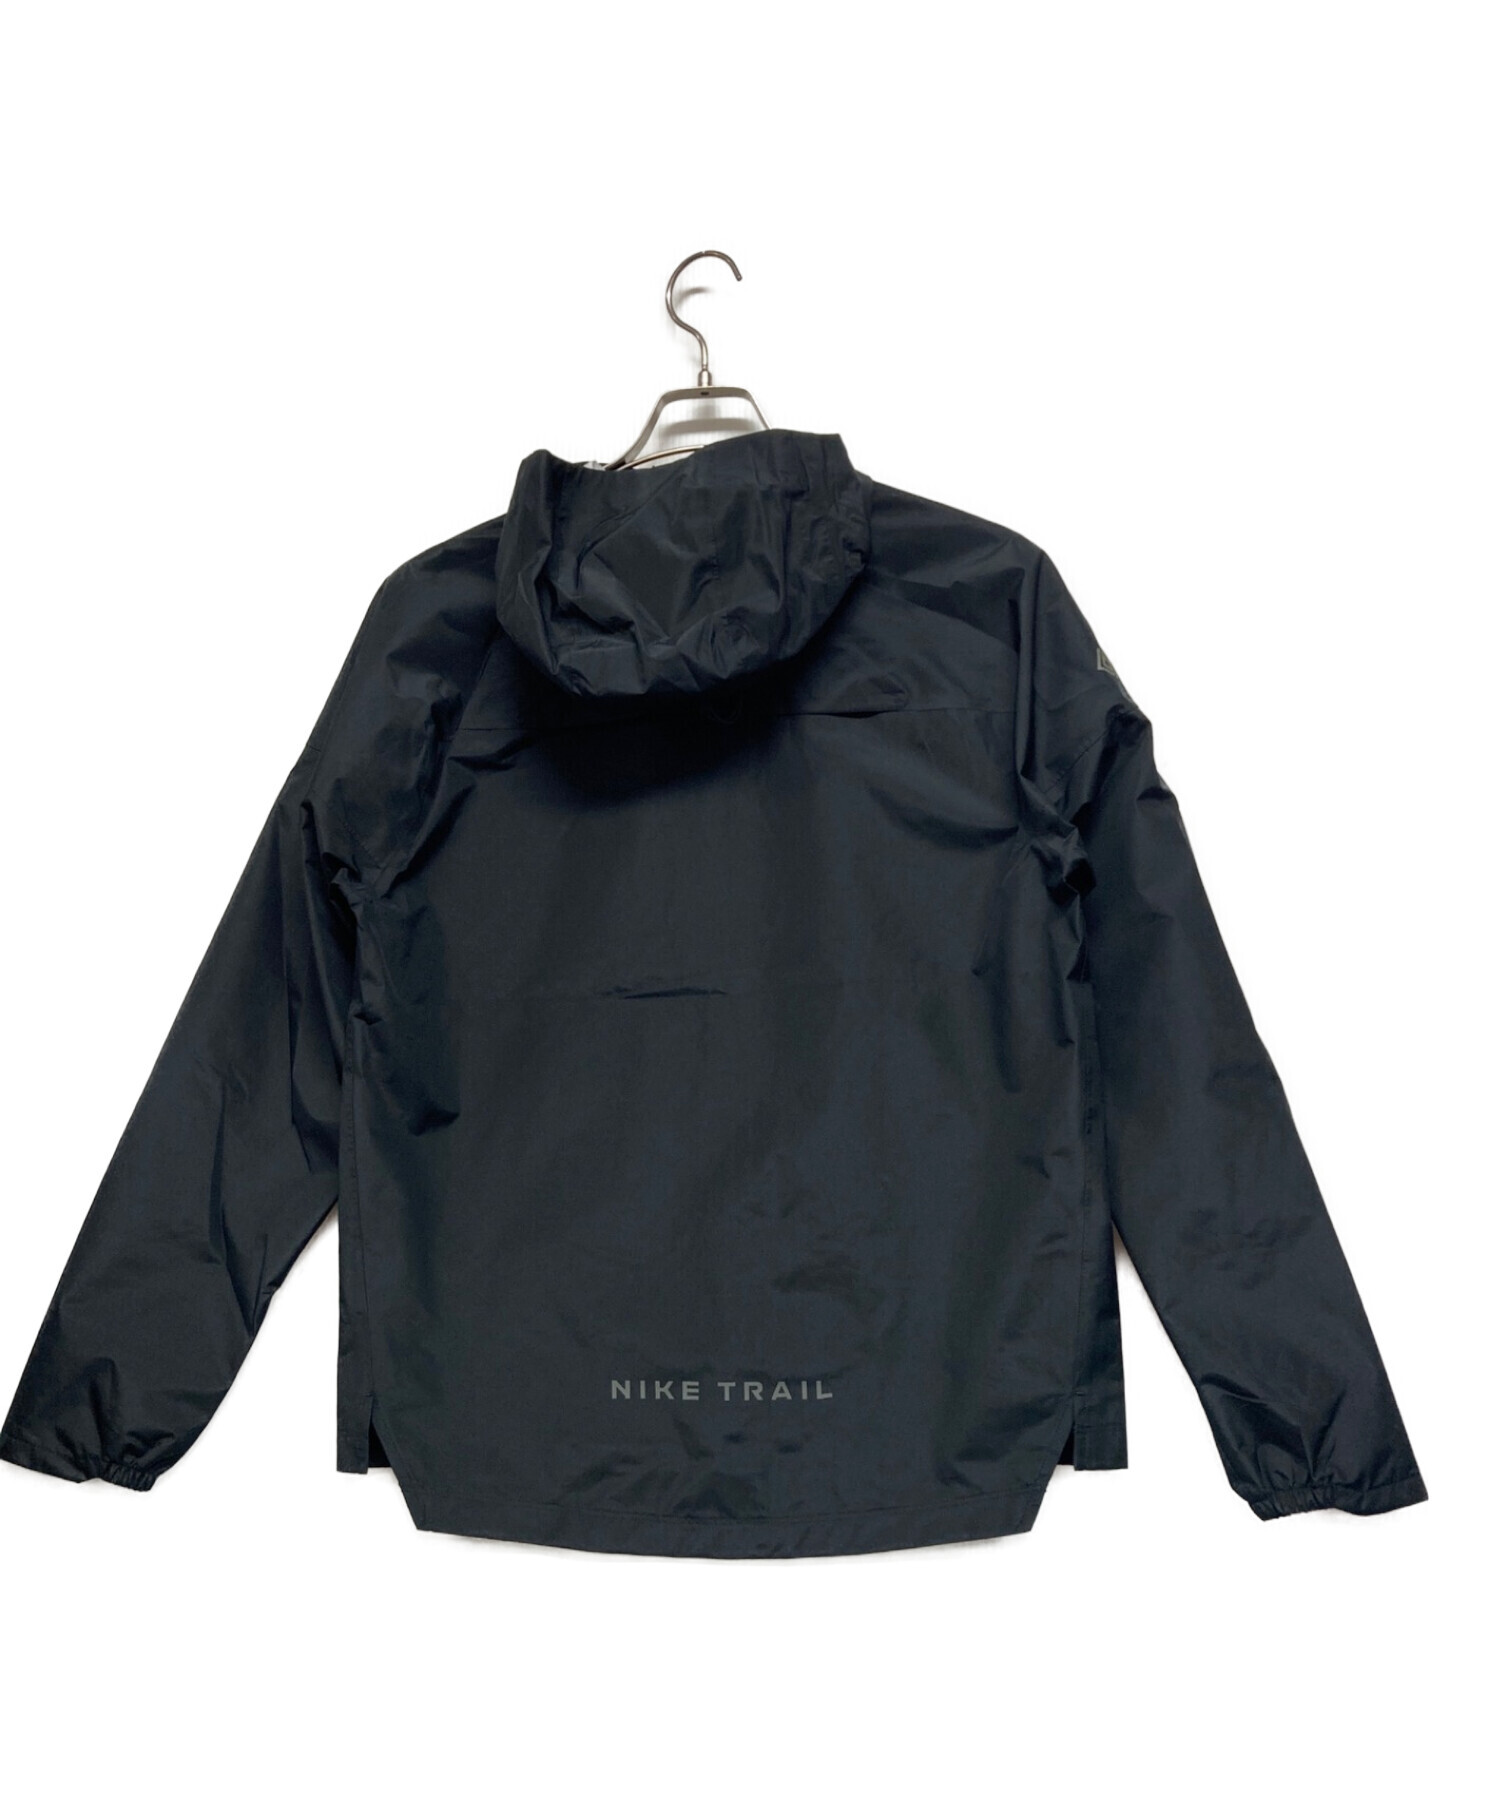 NIKE (ナイキ) ゴアテックス トレイルランニングジャケット ブラック サイズ:S 未使用品